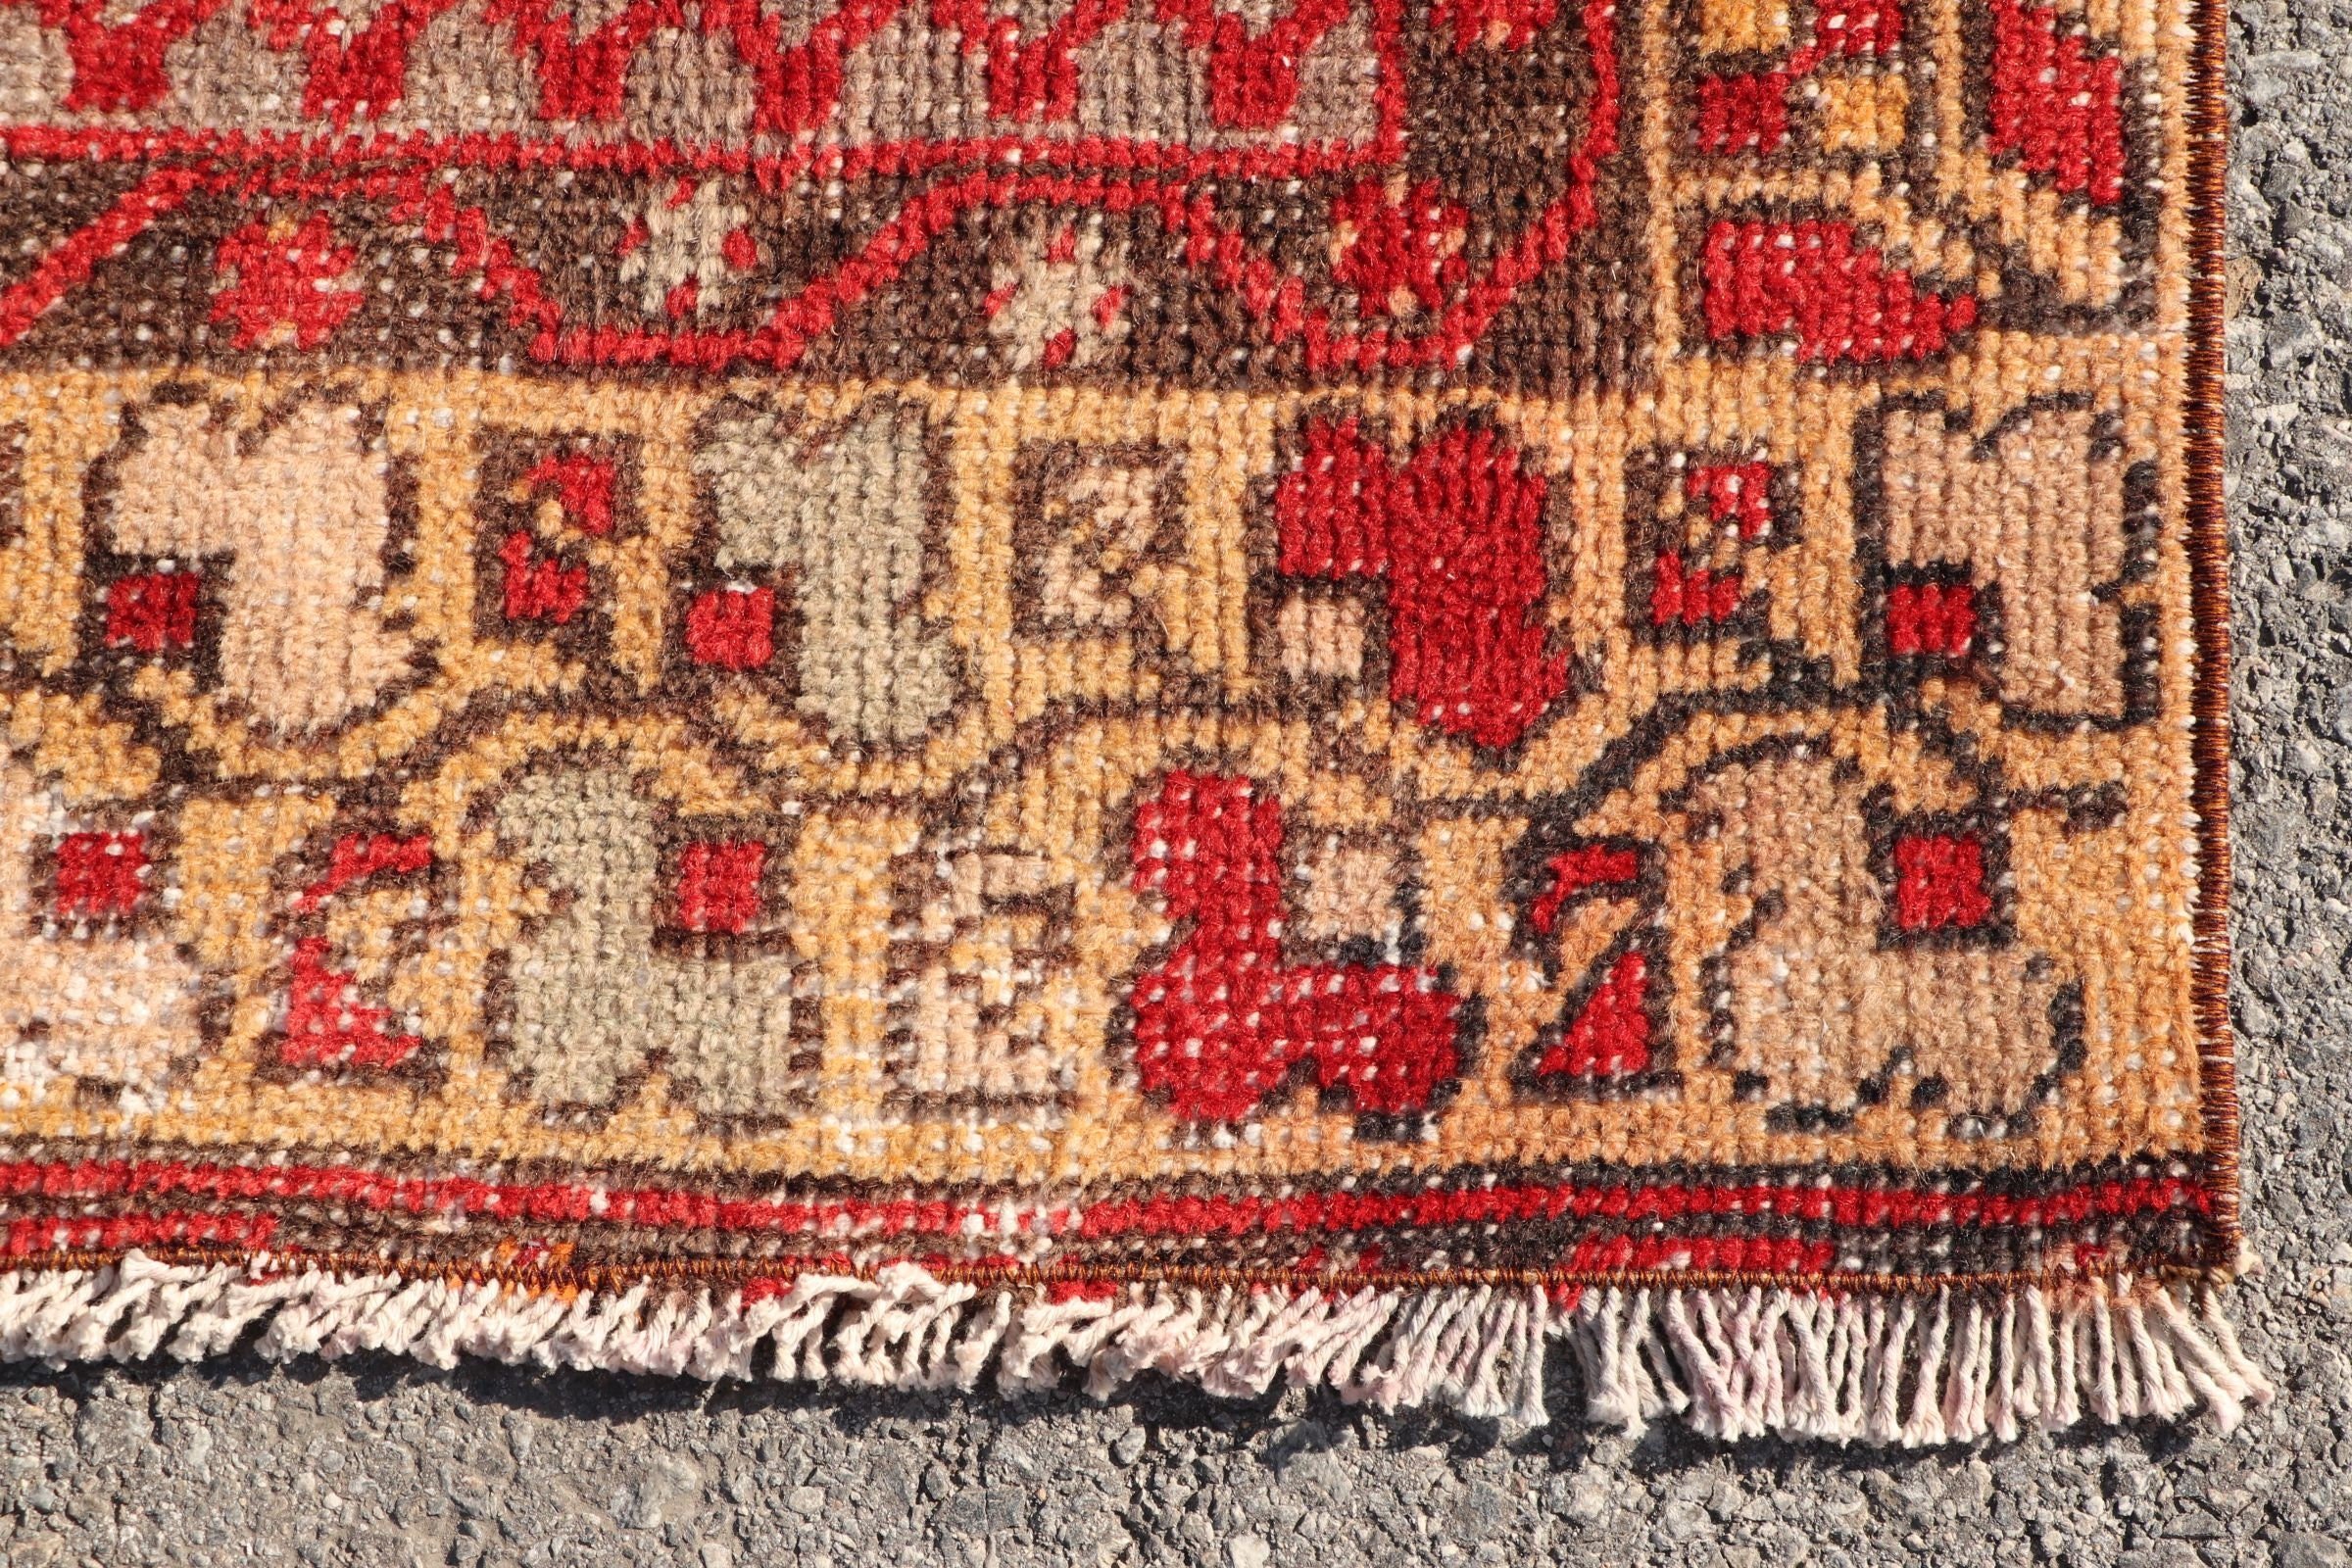 Wool Rug, Turkish Rugs, Dining Room Rugs, 3.6x8.7 ft Area Rug, Red Wool Rugs, Rugs for Floor, Kitchen Rug, Indoor Rugs, Vintage Rug